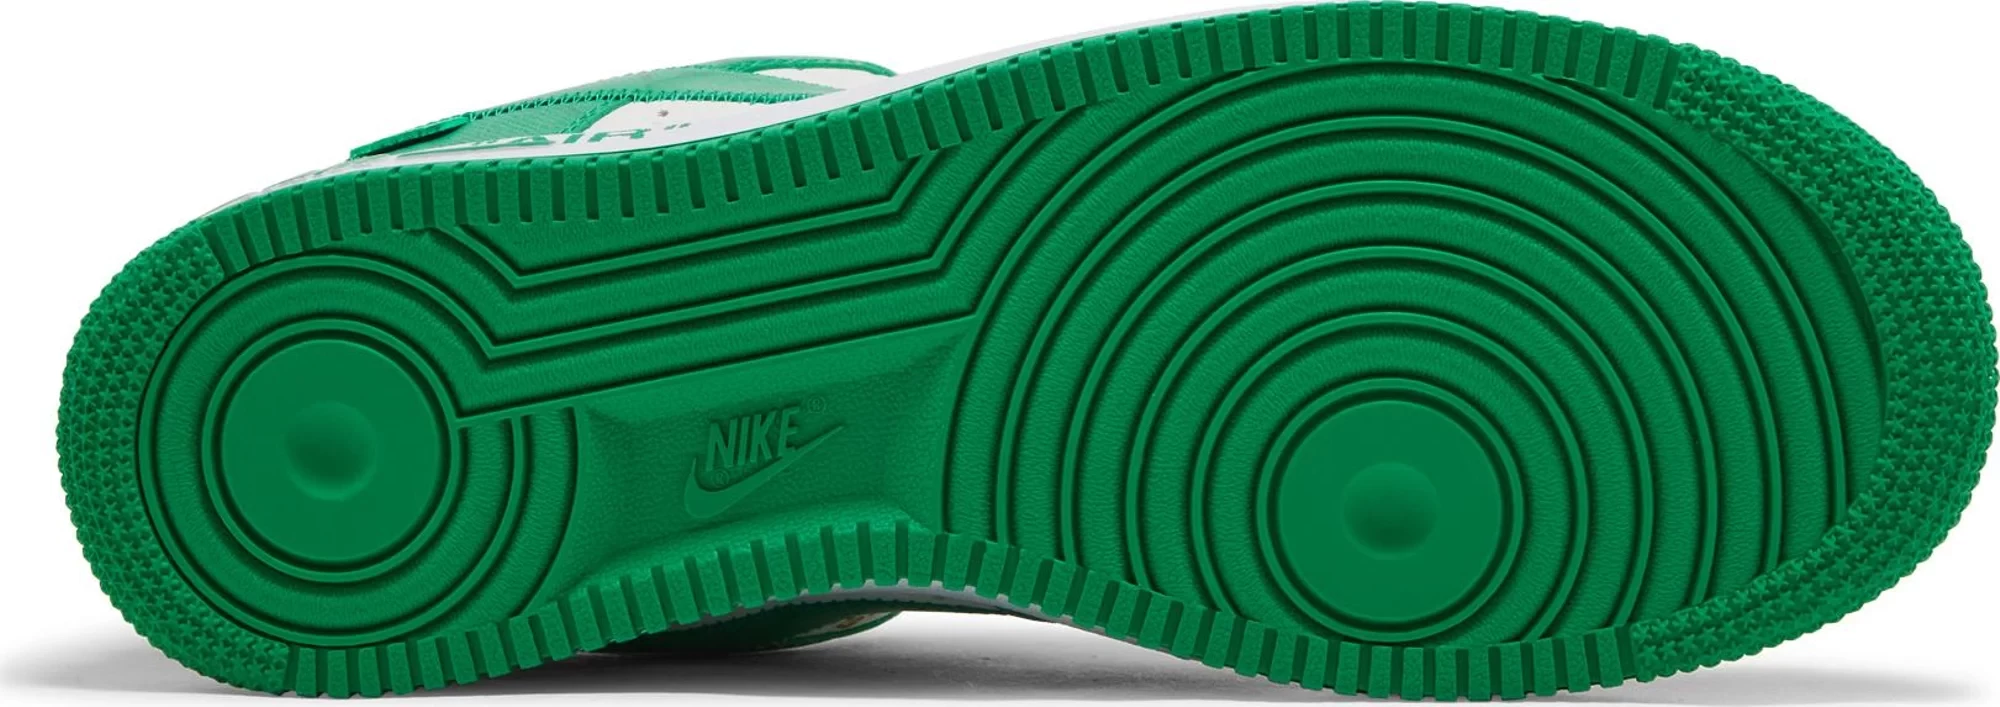 Nike Air Force 1 Low x Louis Vuitton Gym Green Men's Size 16